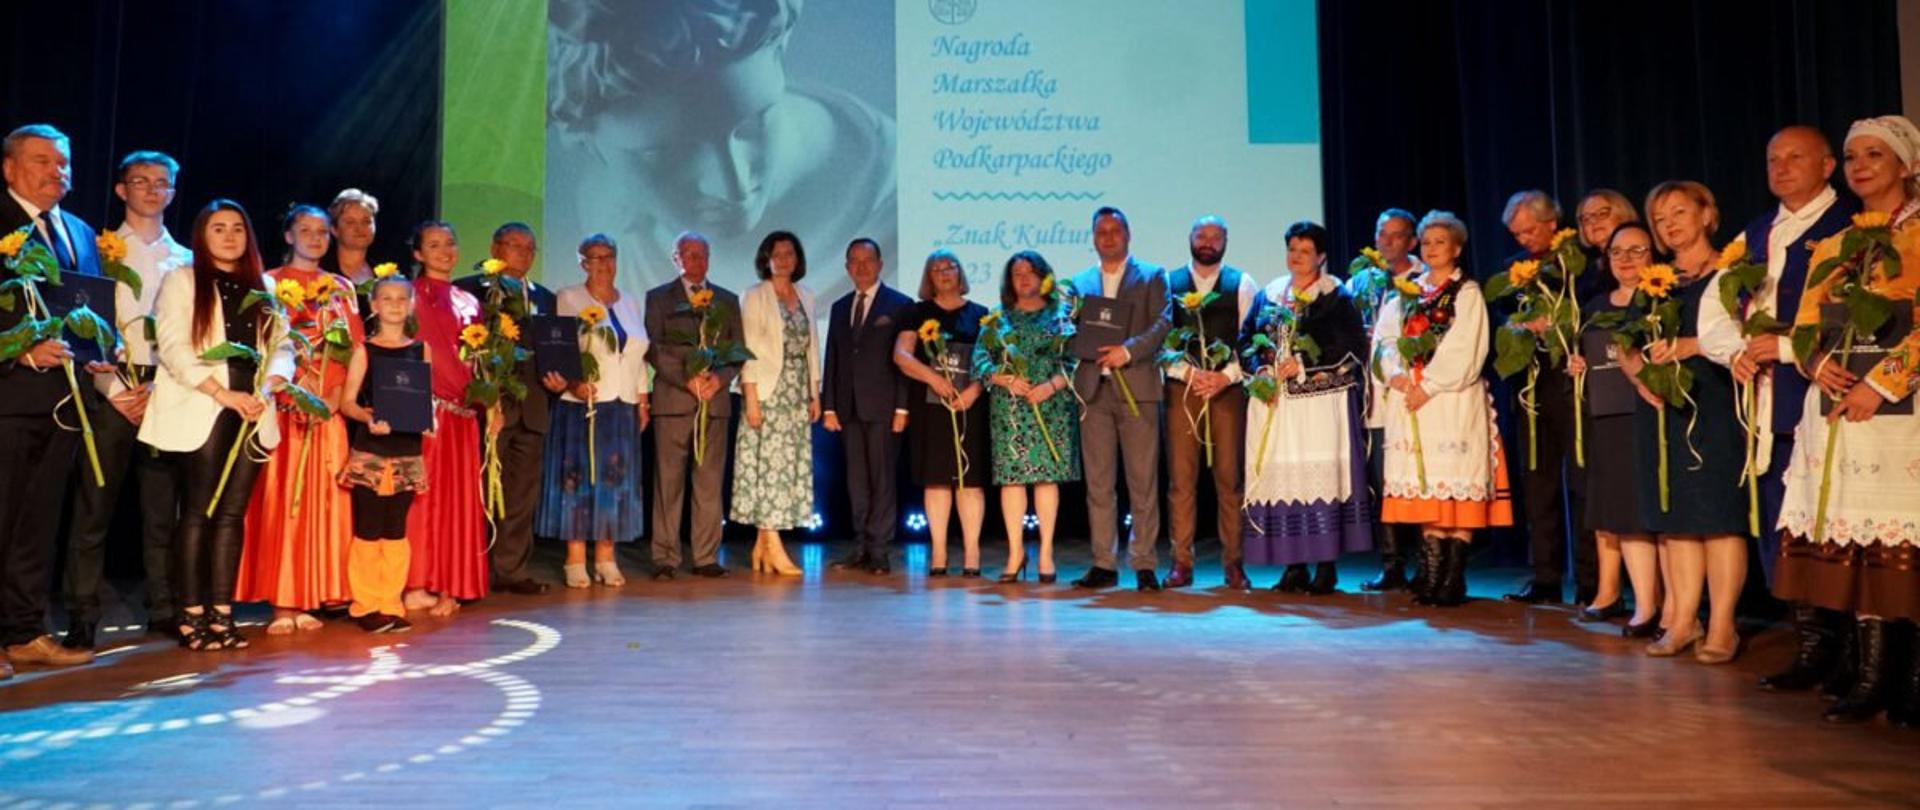 Uczestnicy uroczystości wręczenia nagród" Znaki kultury" na scenie Wojewódzkiego Komu Kultury w Rzeszowie